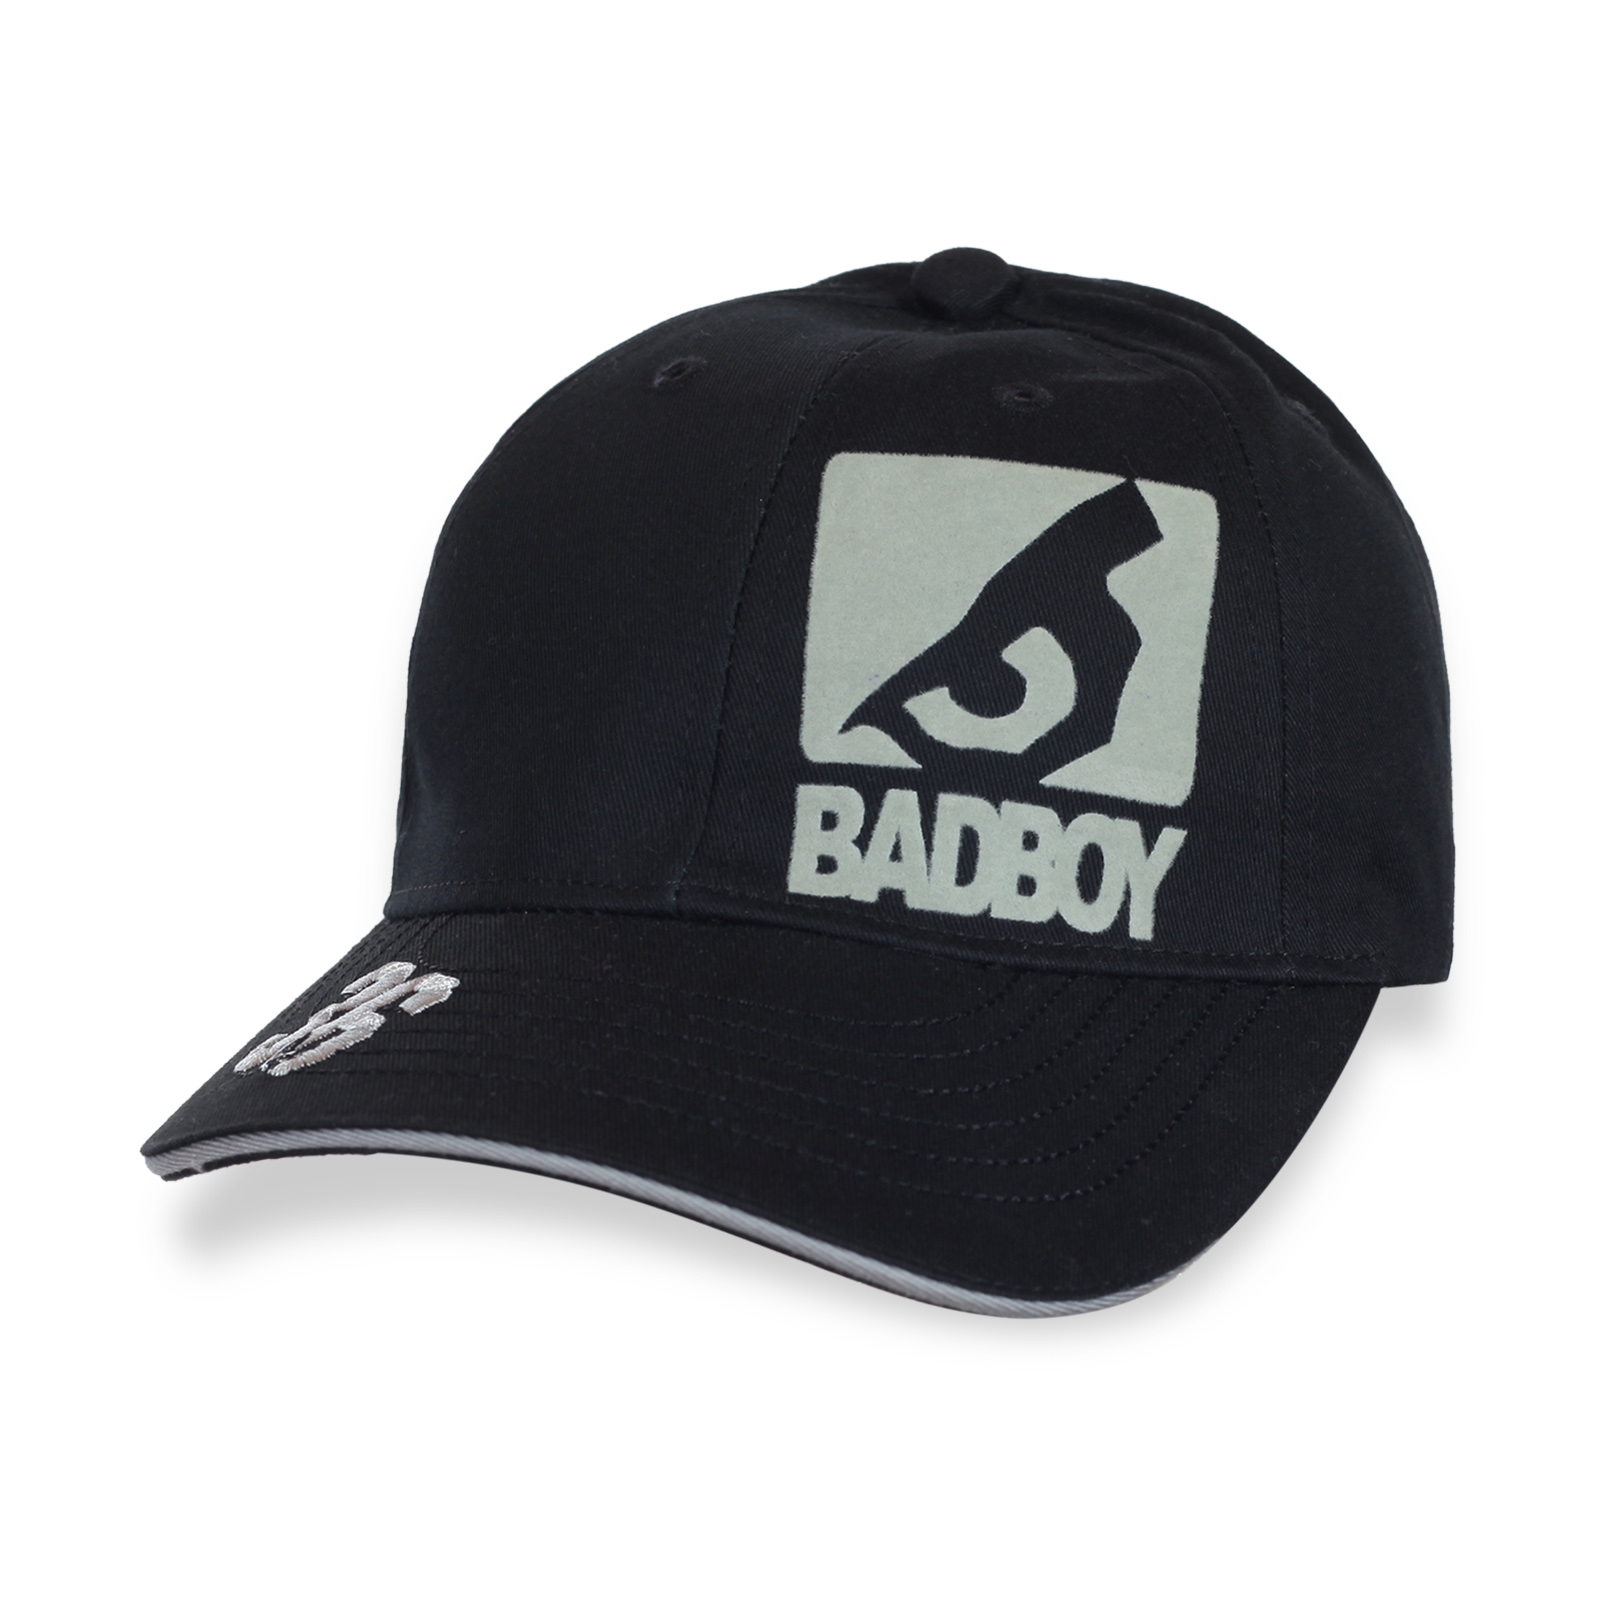 Купить кепку молодежную BADBOY по низкой цене